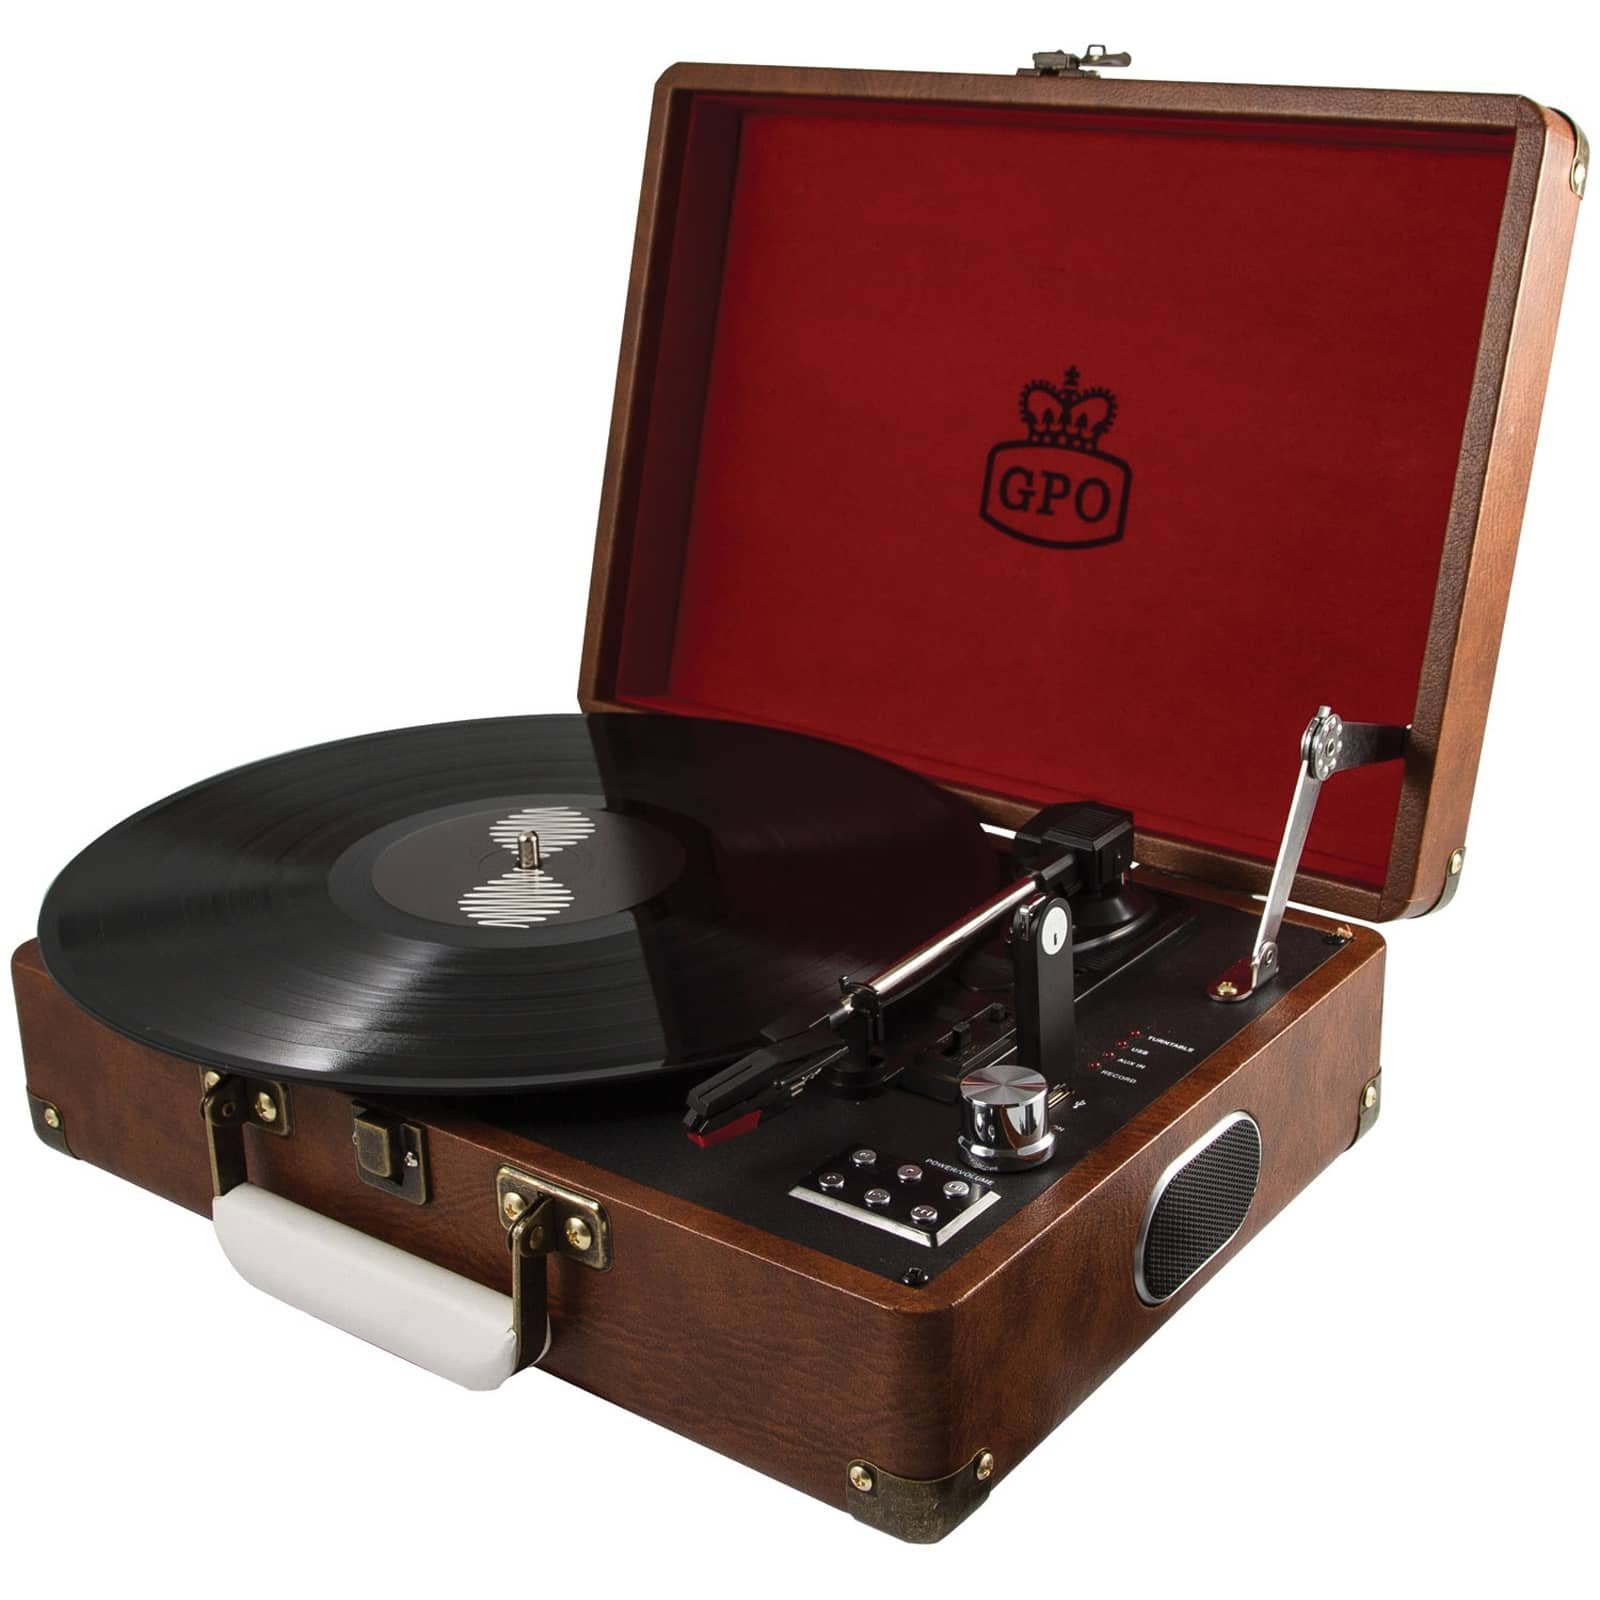 GPO Attache Plattenspieler im Aktenkoffer-Stil mit Vinyl Plattenspieler und eingebauten Lautsprechern, Vintage Braun